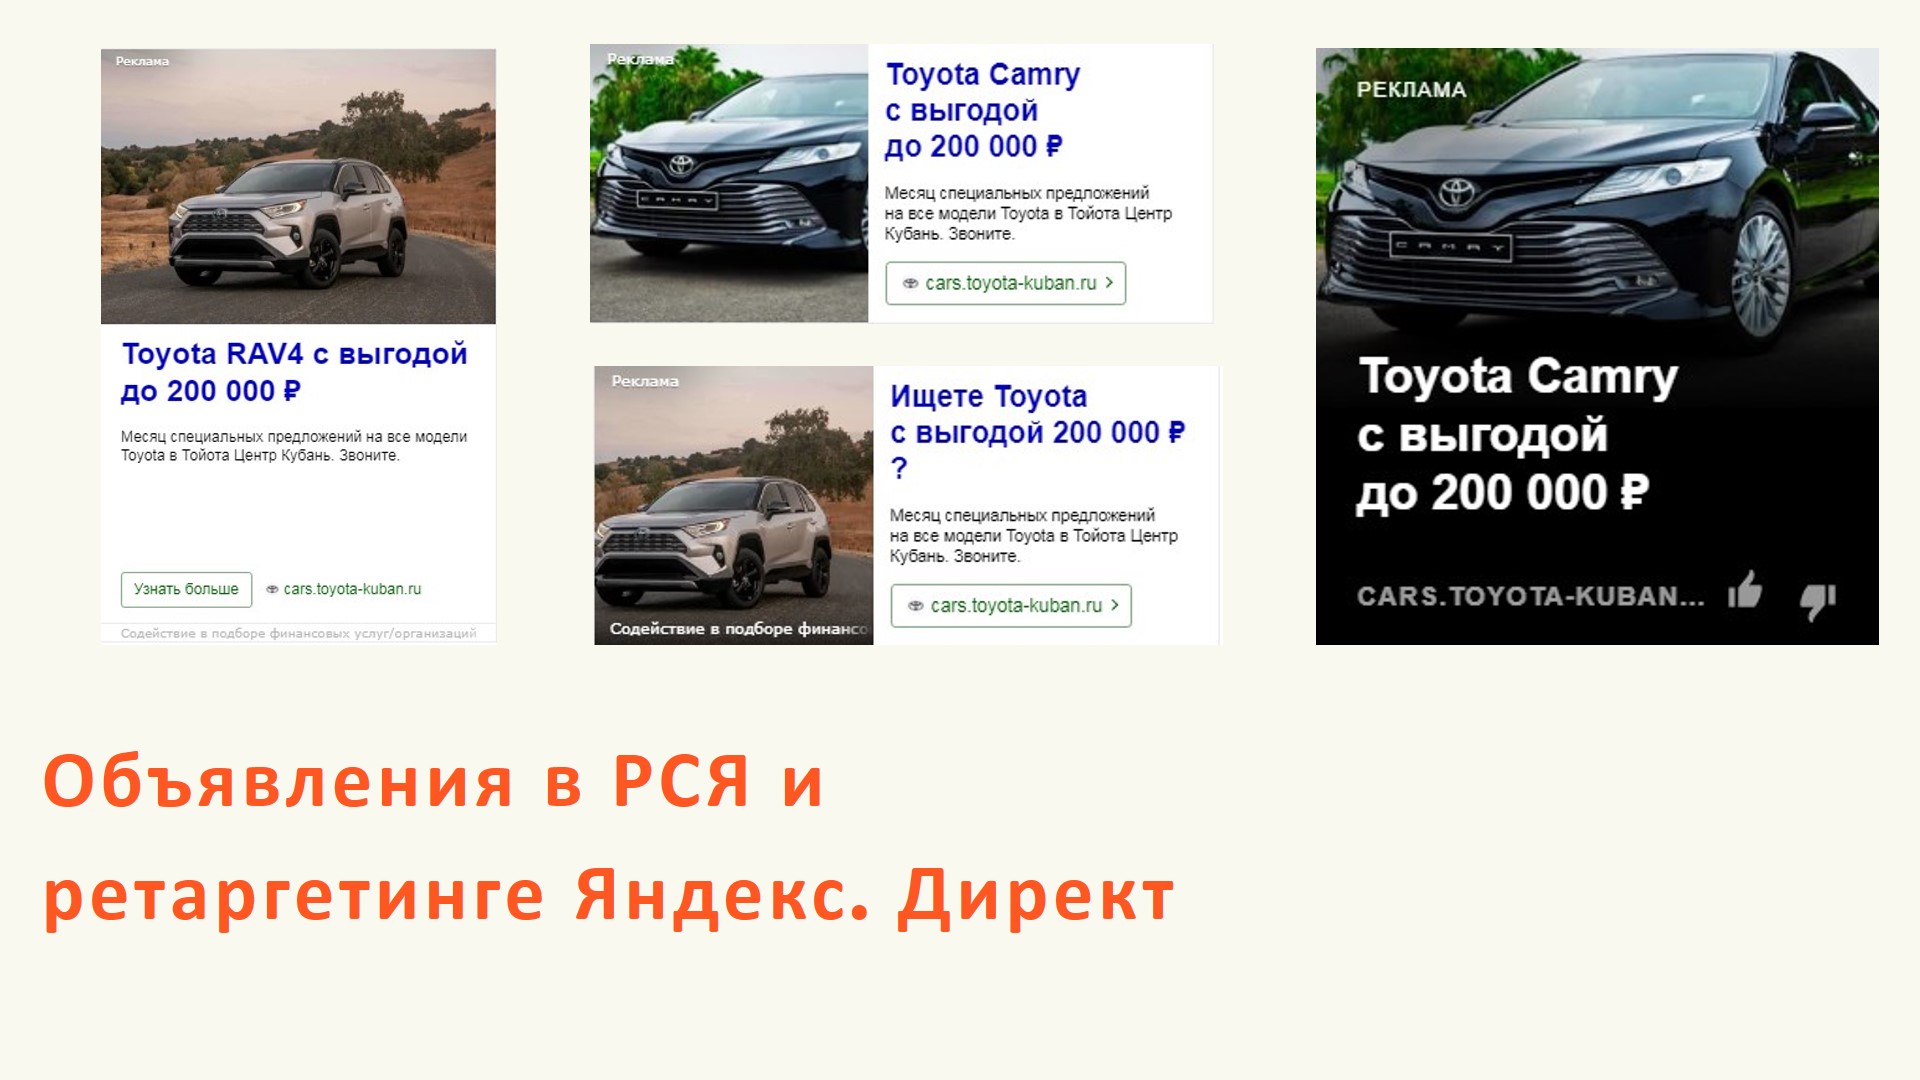 Официальный дилер Toyota - Как продать 120 автомобилей за месяц